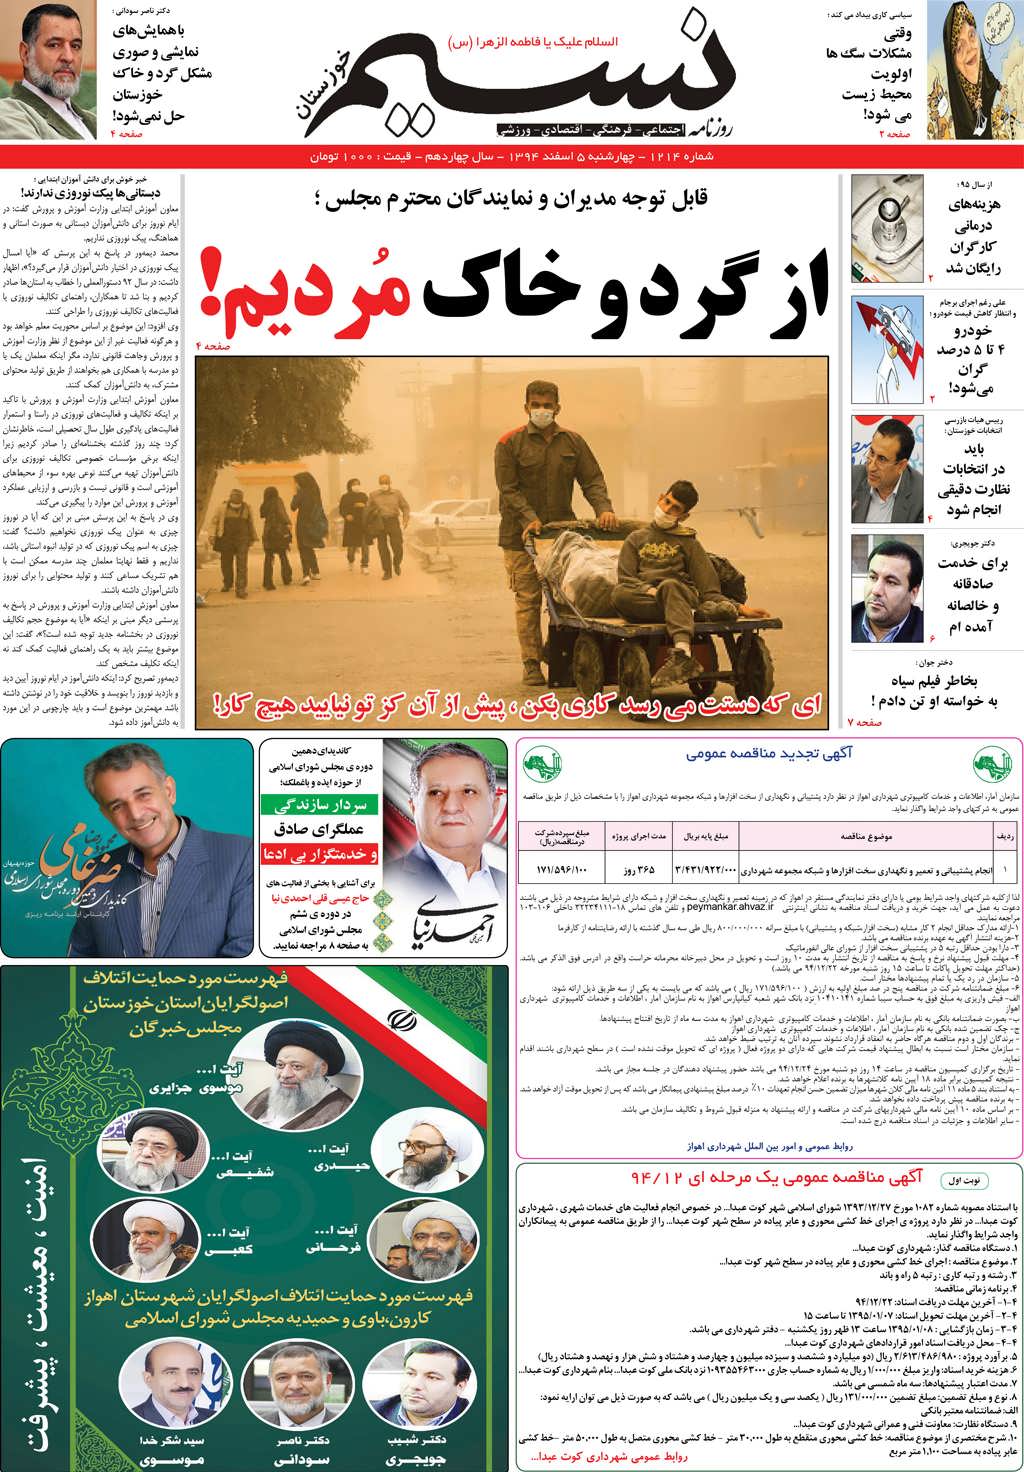 صفحه اصلی روزنامه نسیم شماره 1214